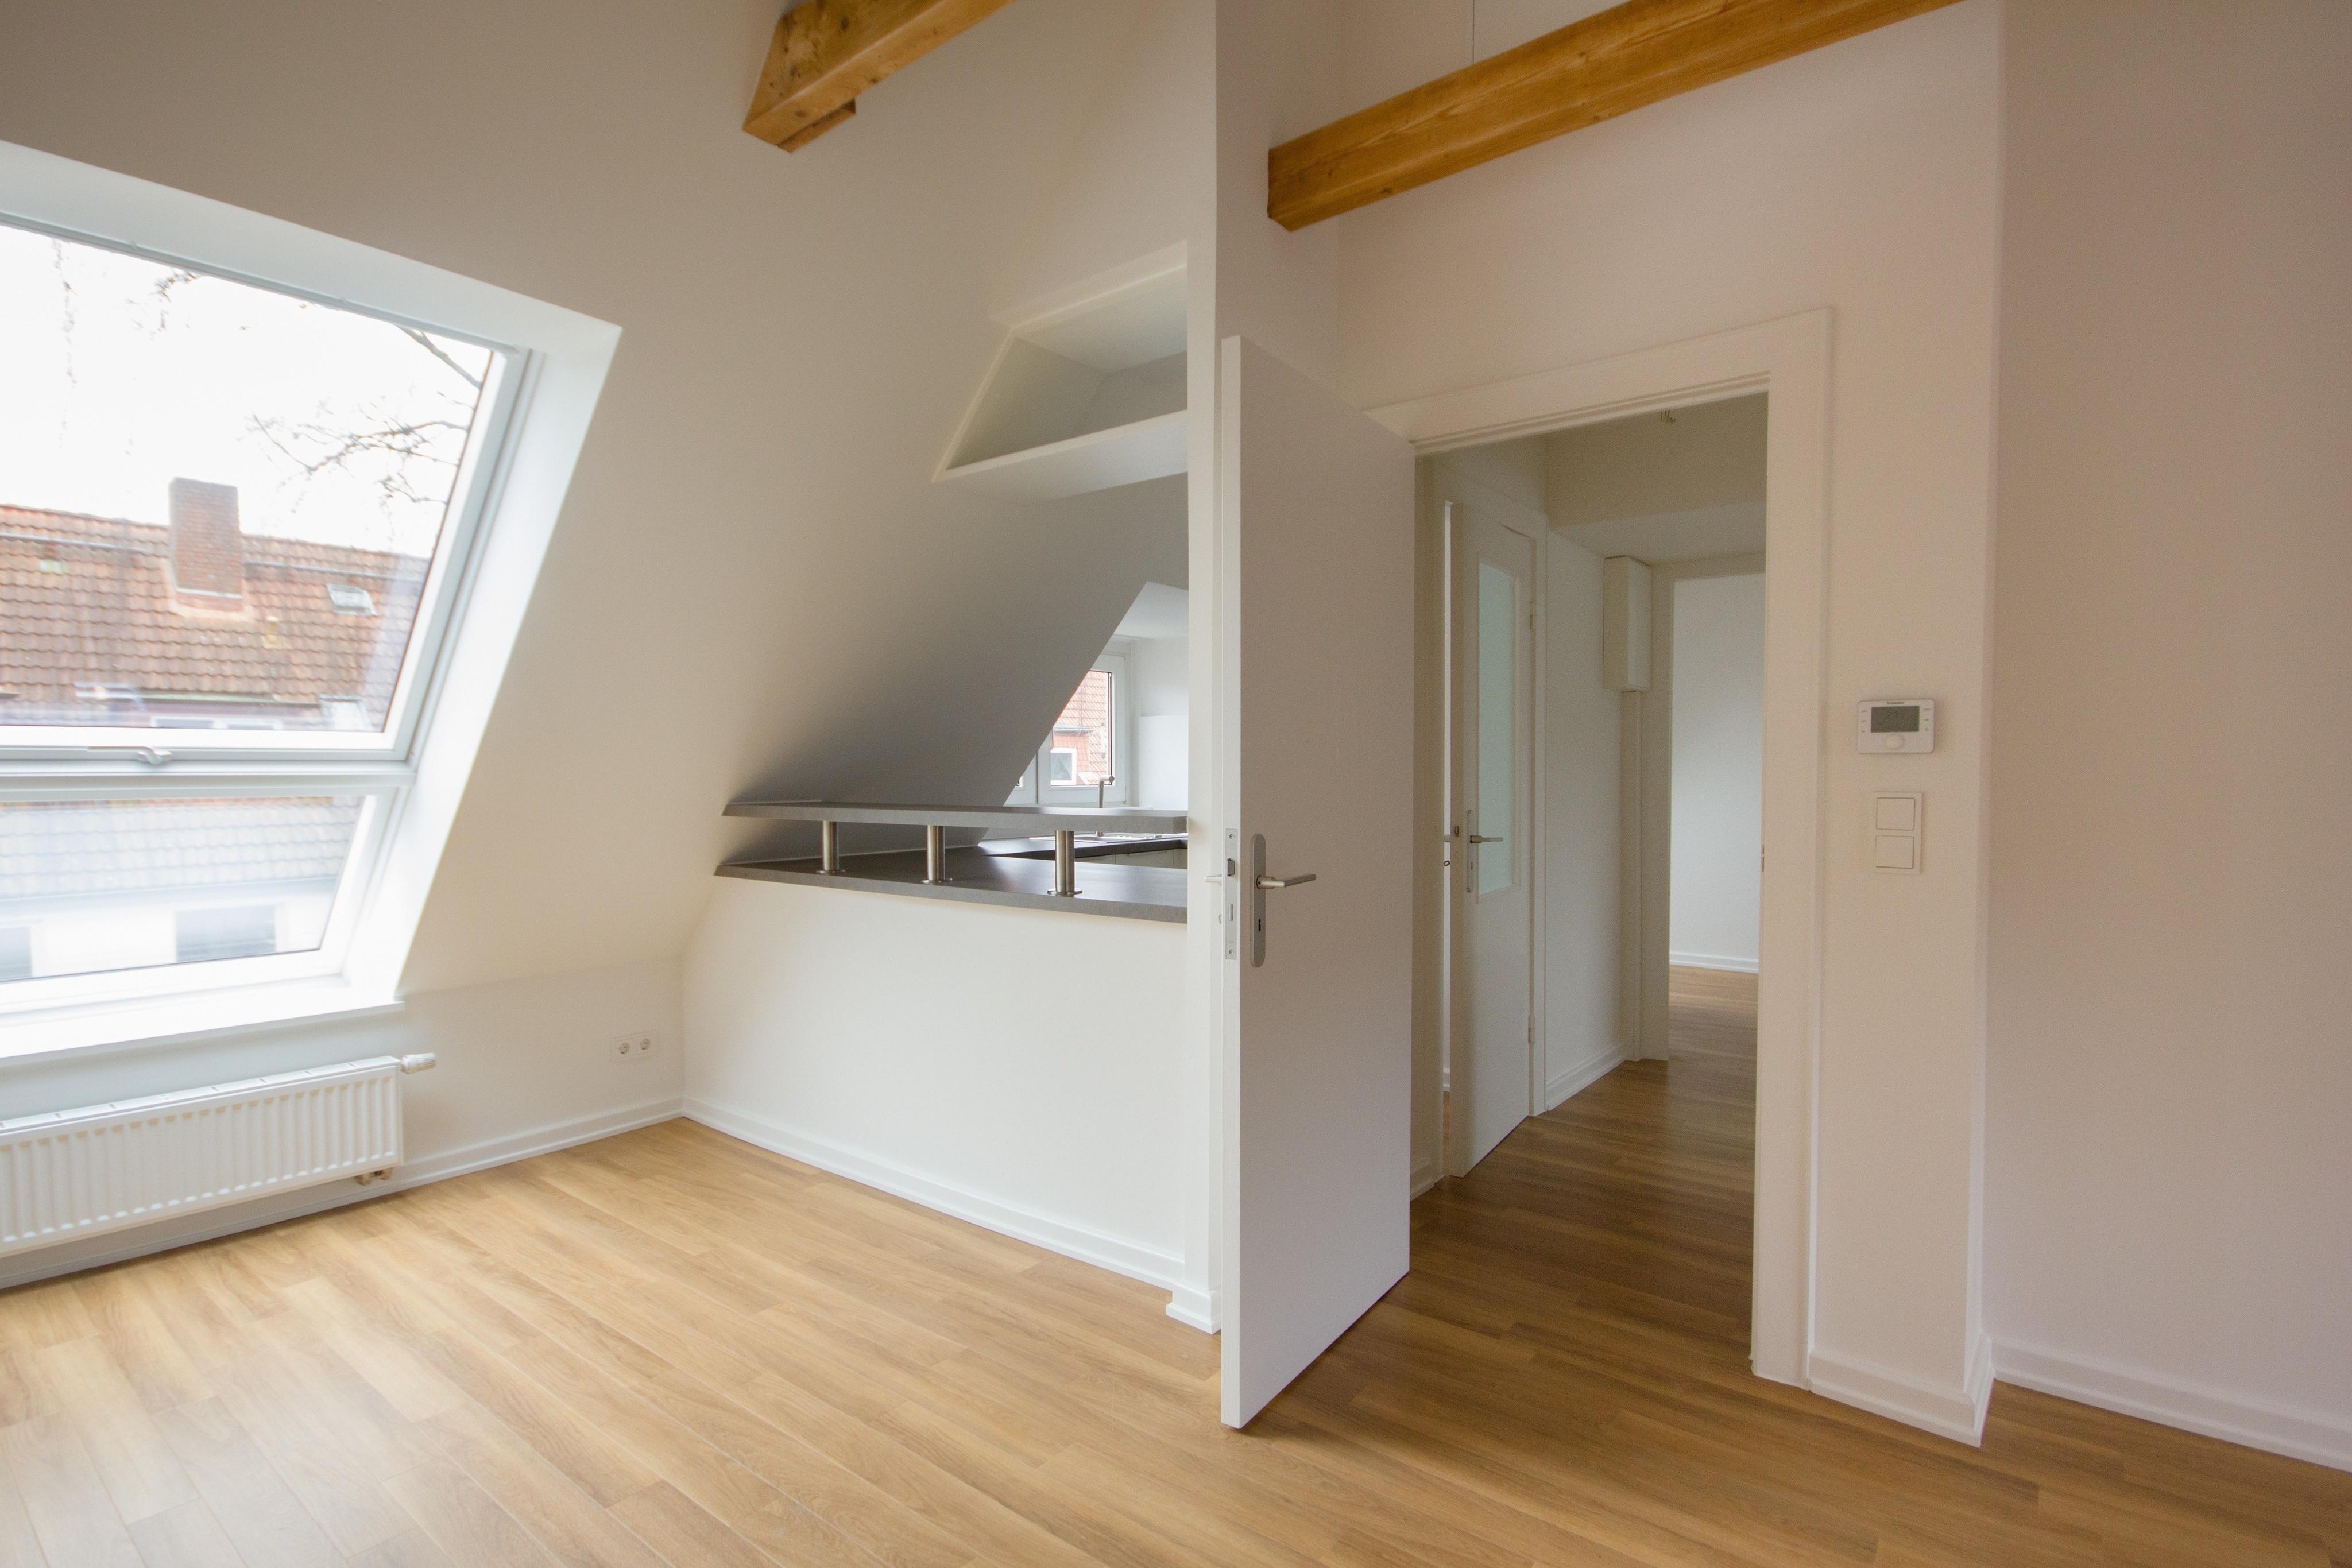 Erweiterung des Dachgeschosses #dachgeschoss #deckenbalken #offeneküche #vinylboden #dachgeschossausbau ©Kai Lietzke